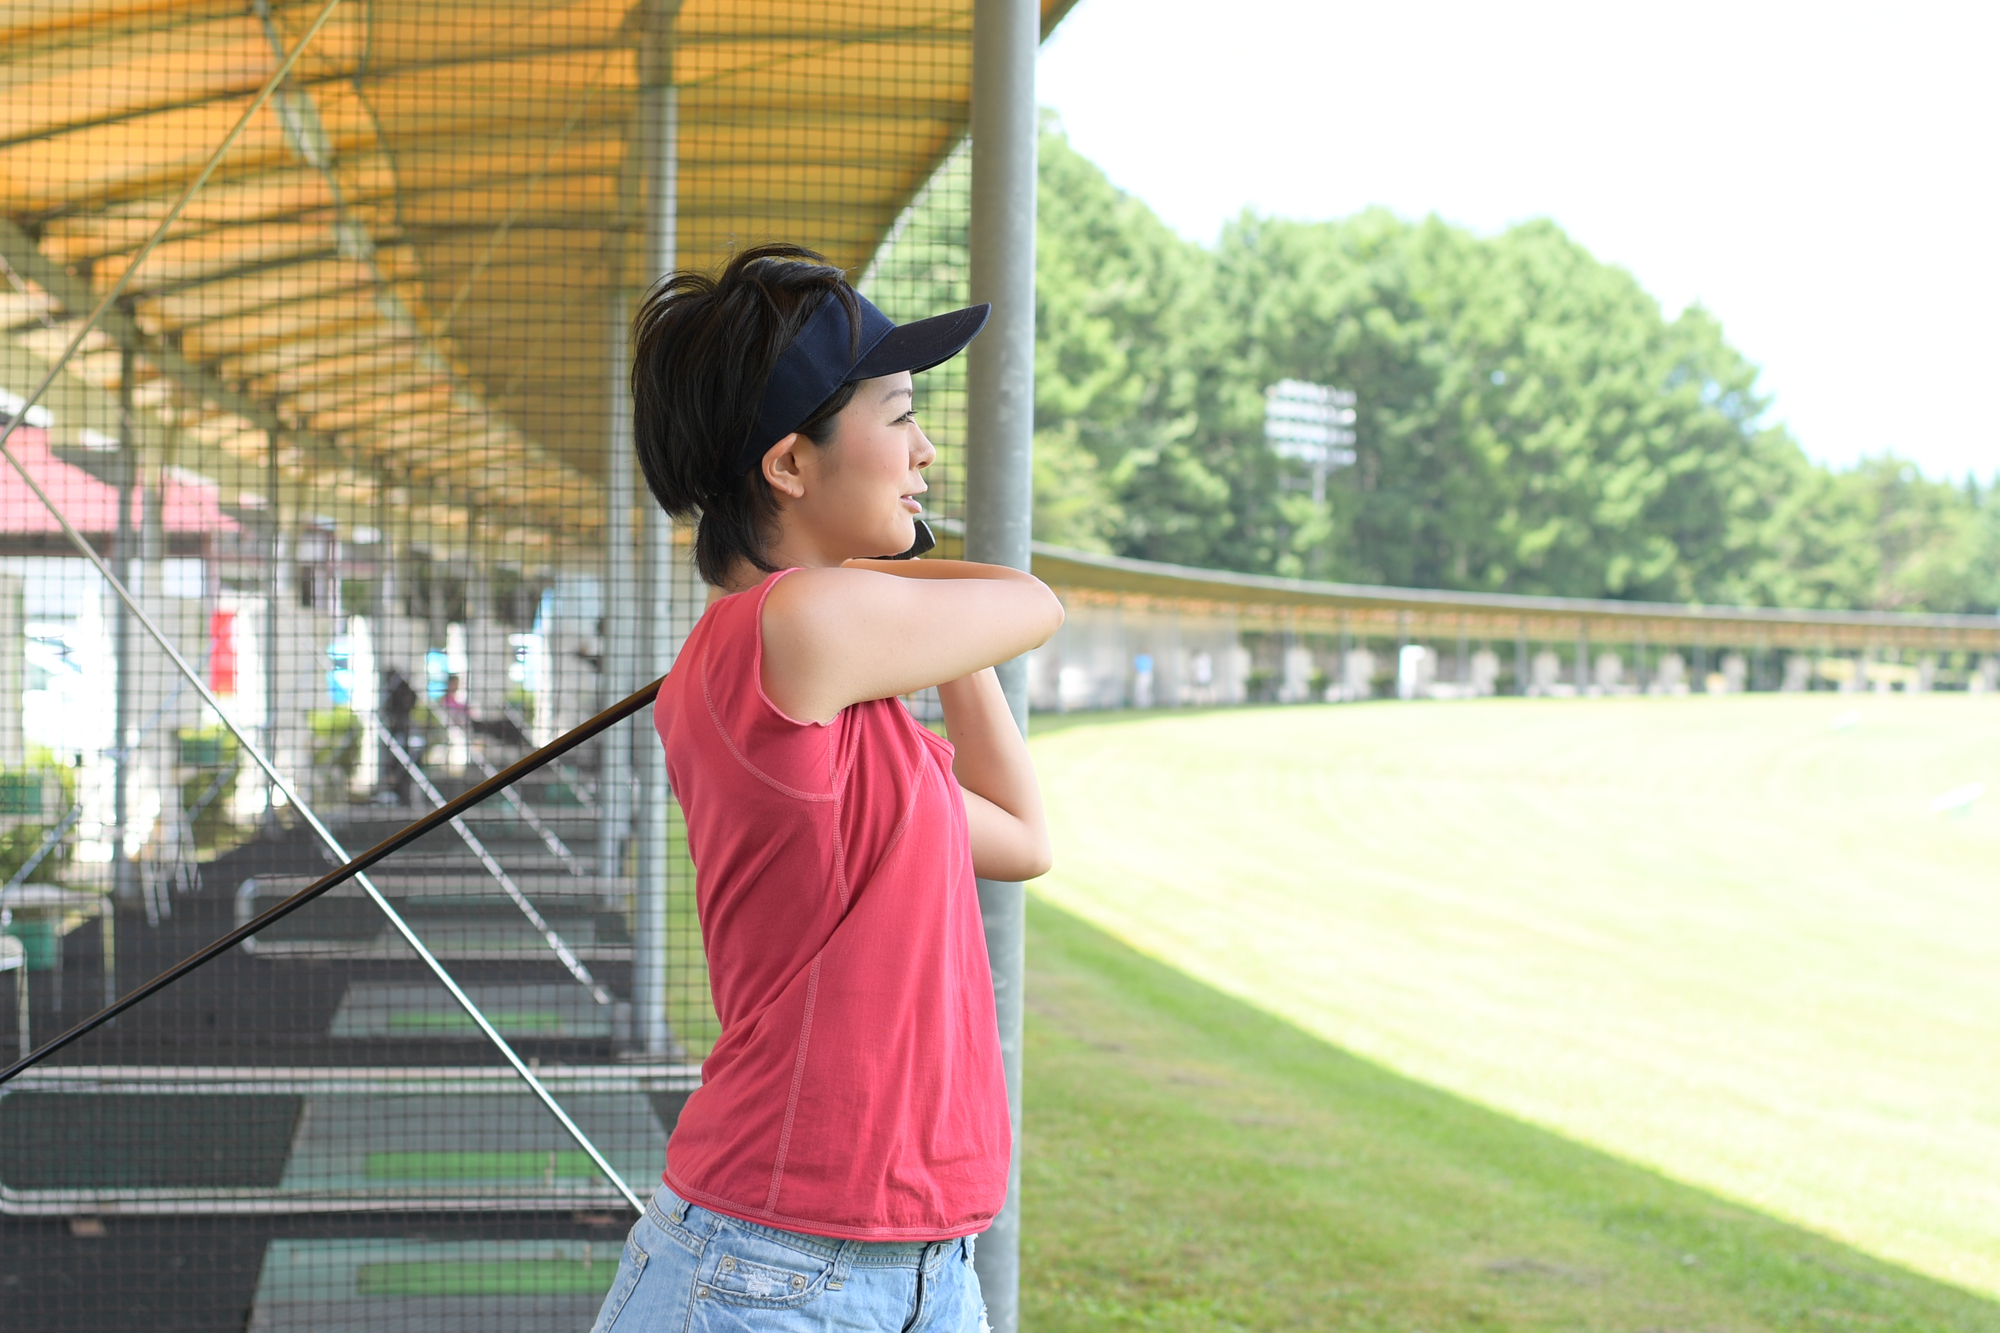 ゴルフ初心者の女性に適した練習方法とは 鎌倉パブリックゴルフ場